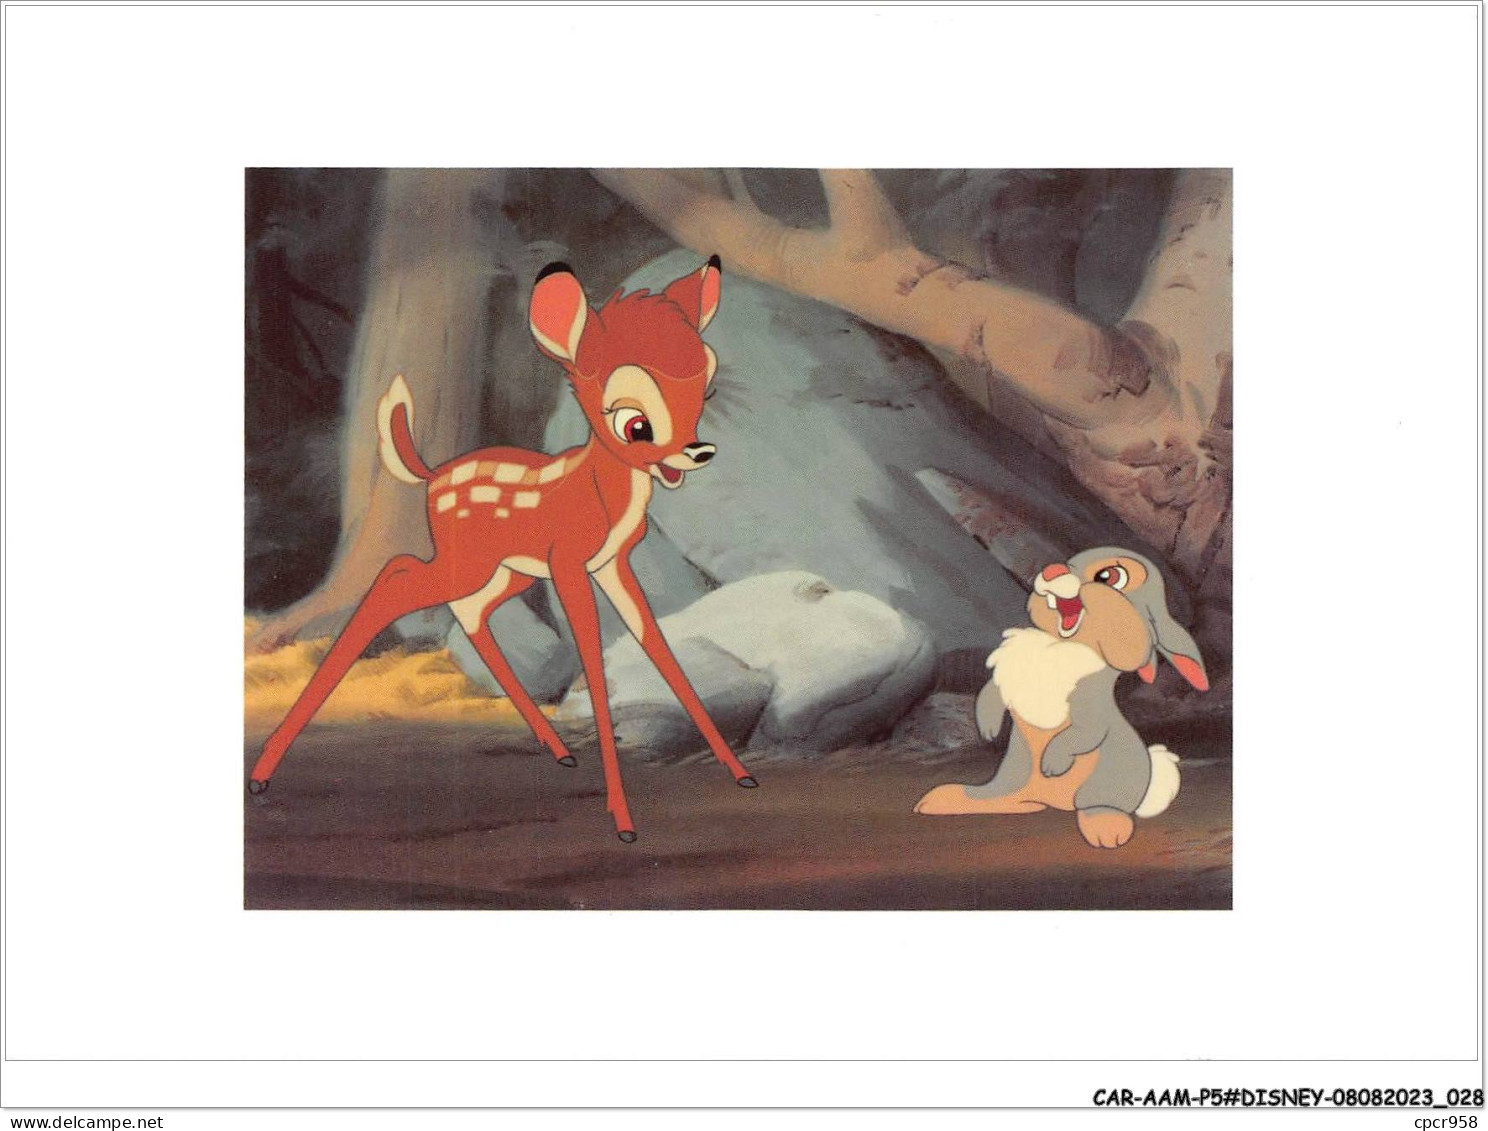 CAR-AAMP5-DISNEY-0422 - Bambi Et Pan-Pan - Bambi And Thumper Laugh Together - Disneyland